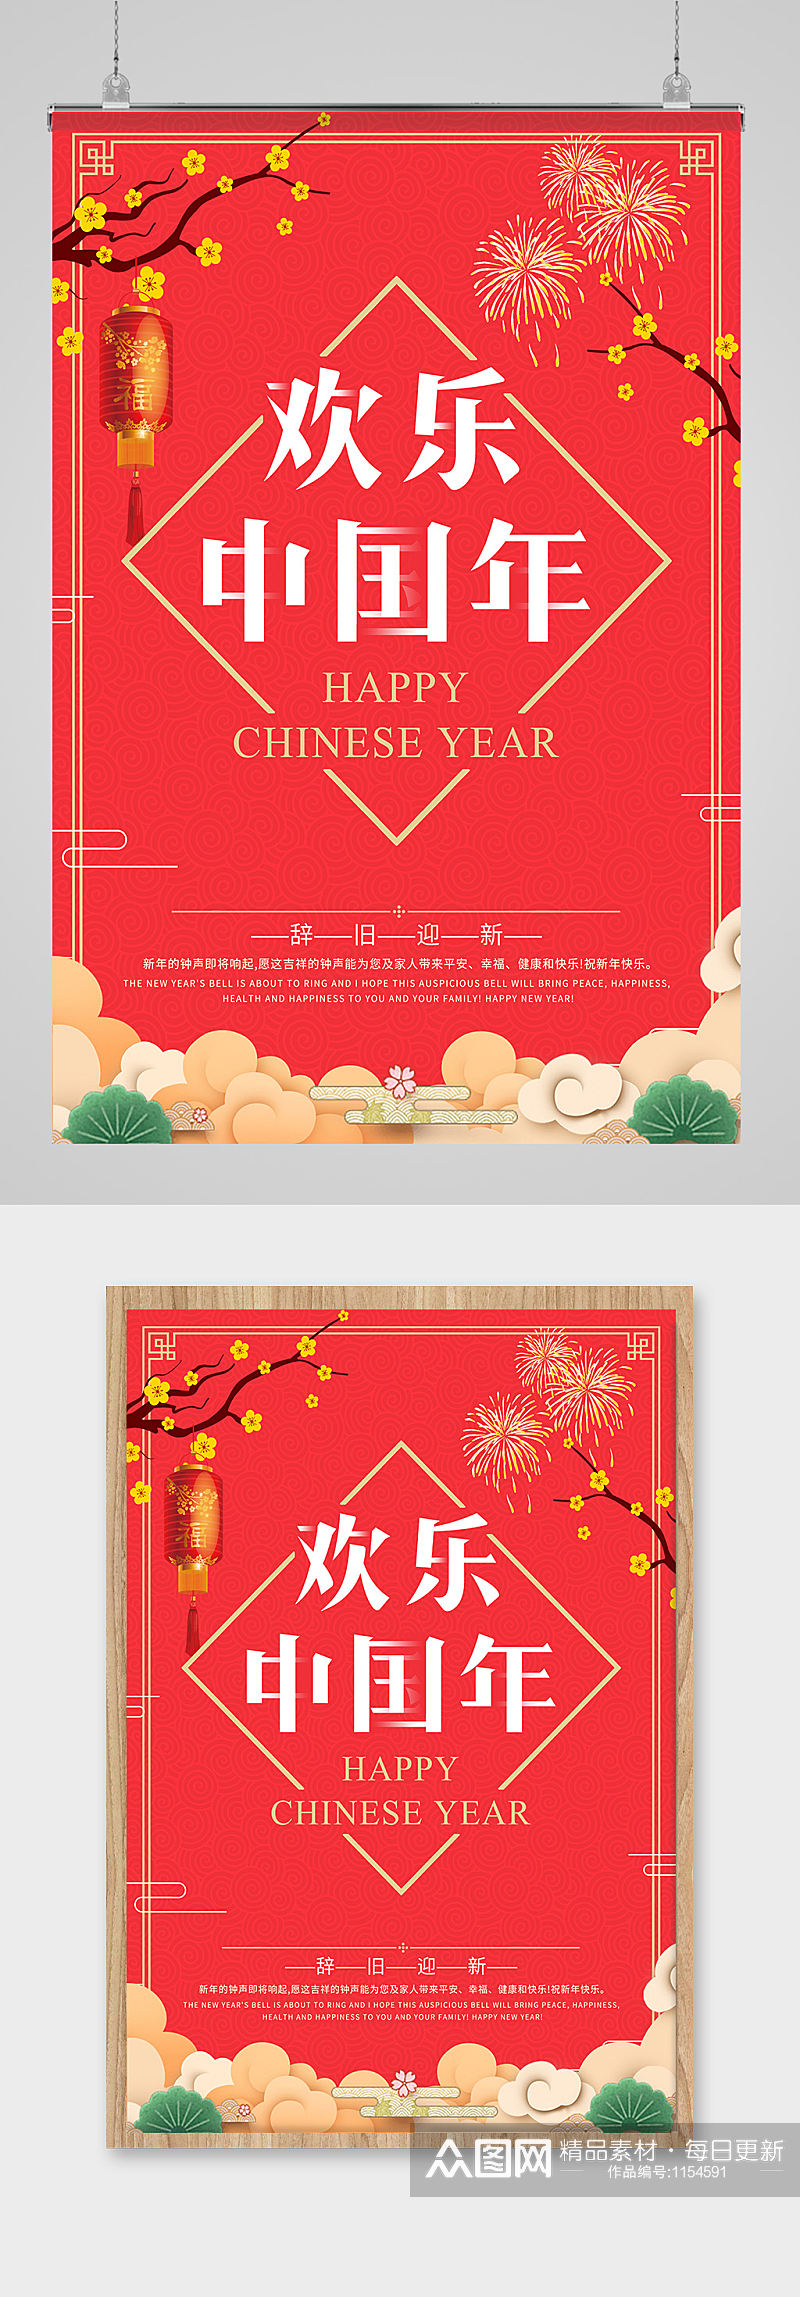 欢度中国年海报设计素材